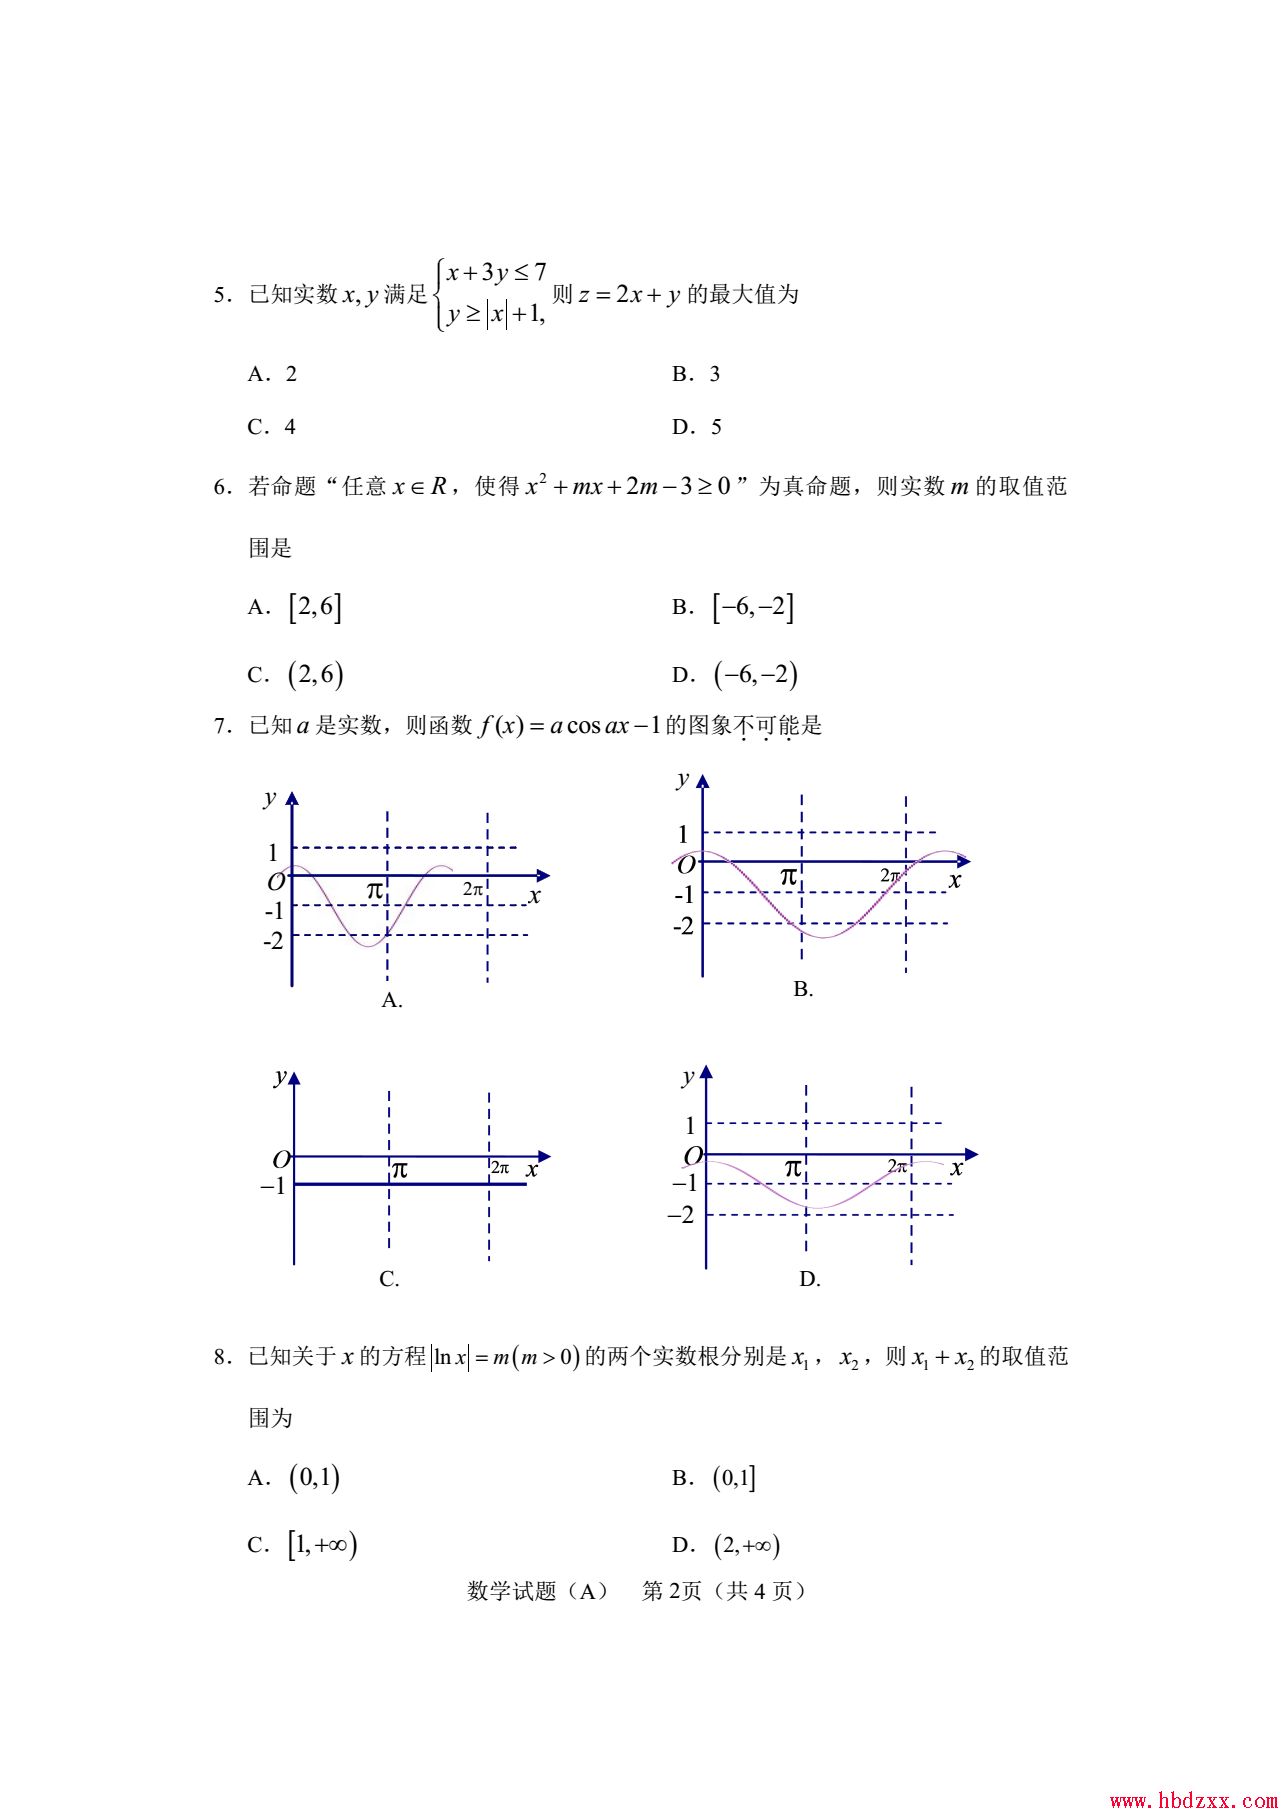 石家庄铁路职业技术学院2013年数学单招试题 图2